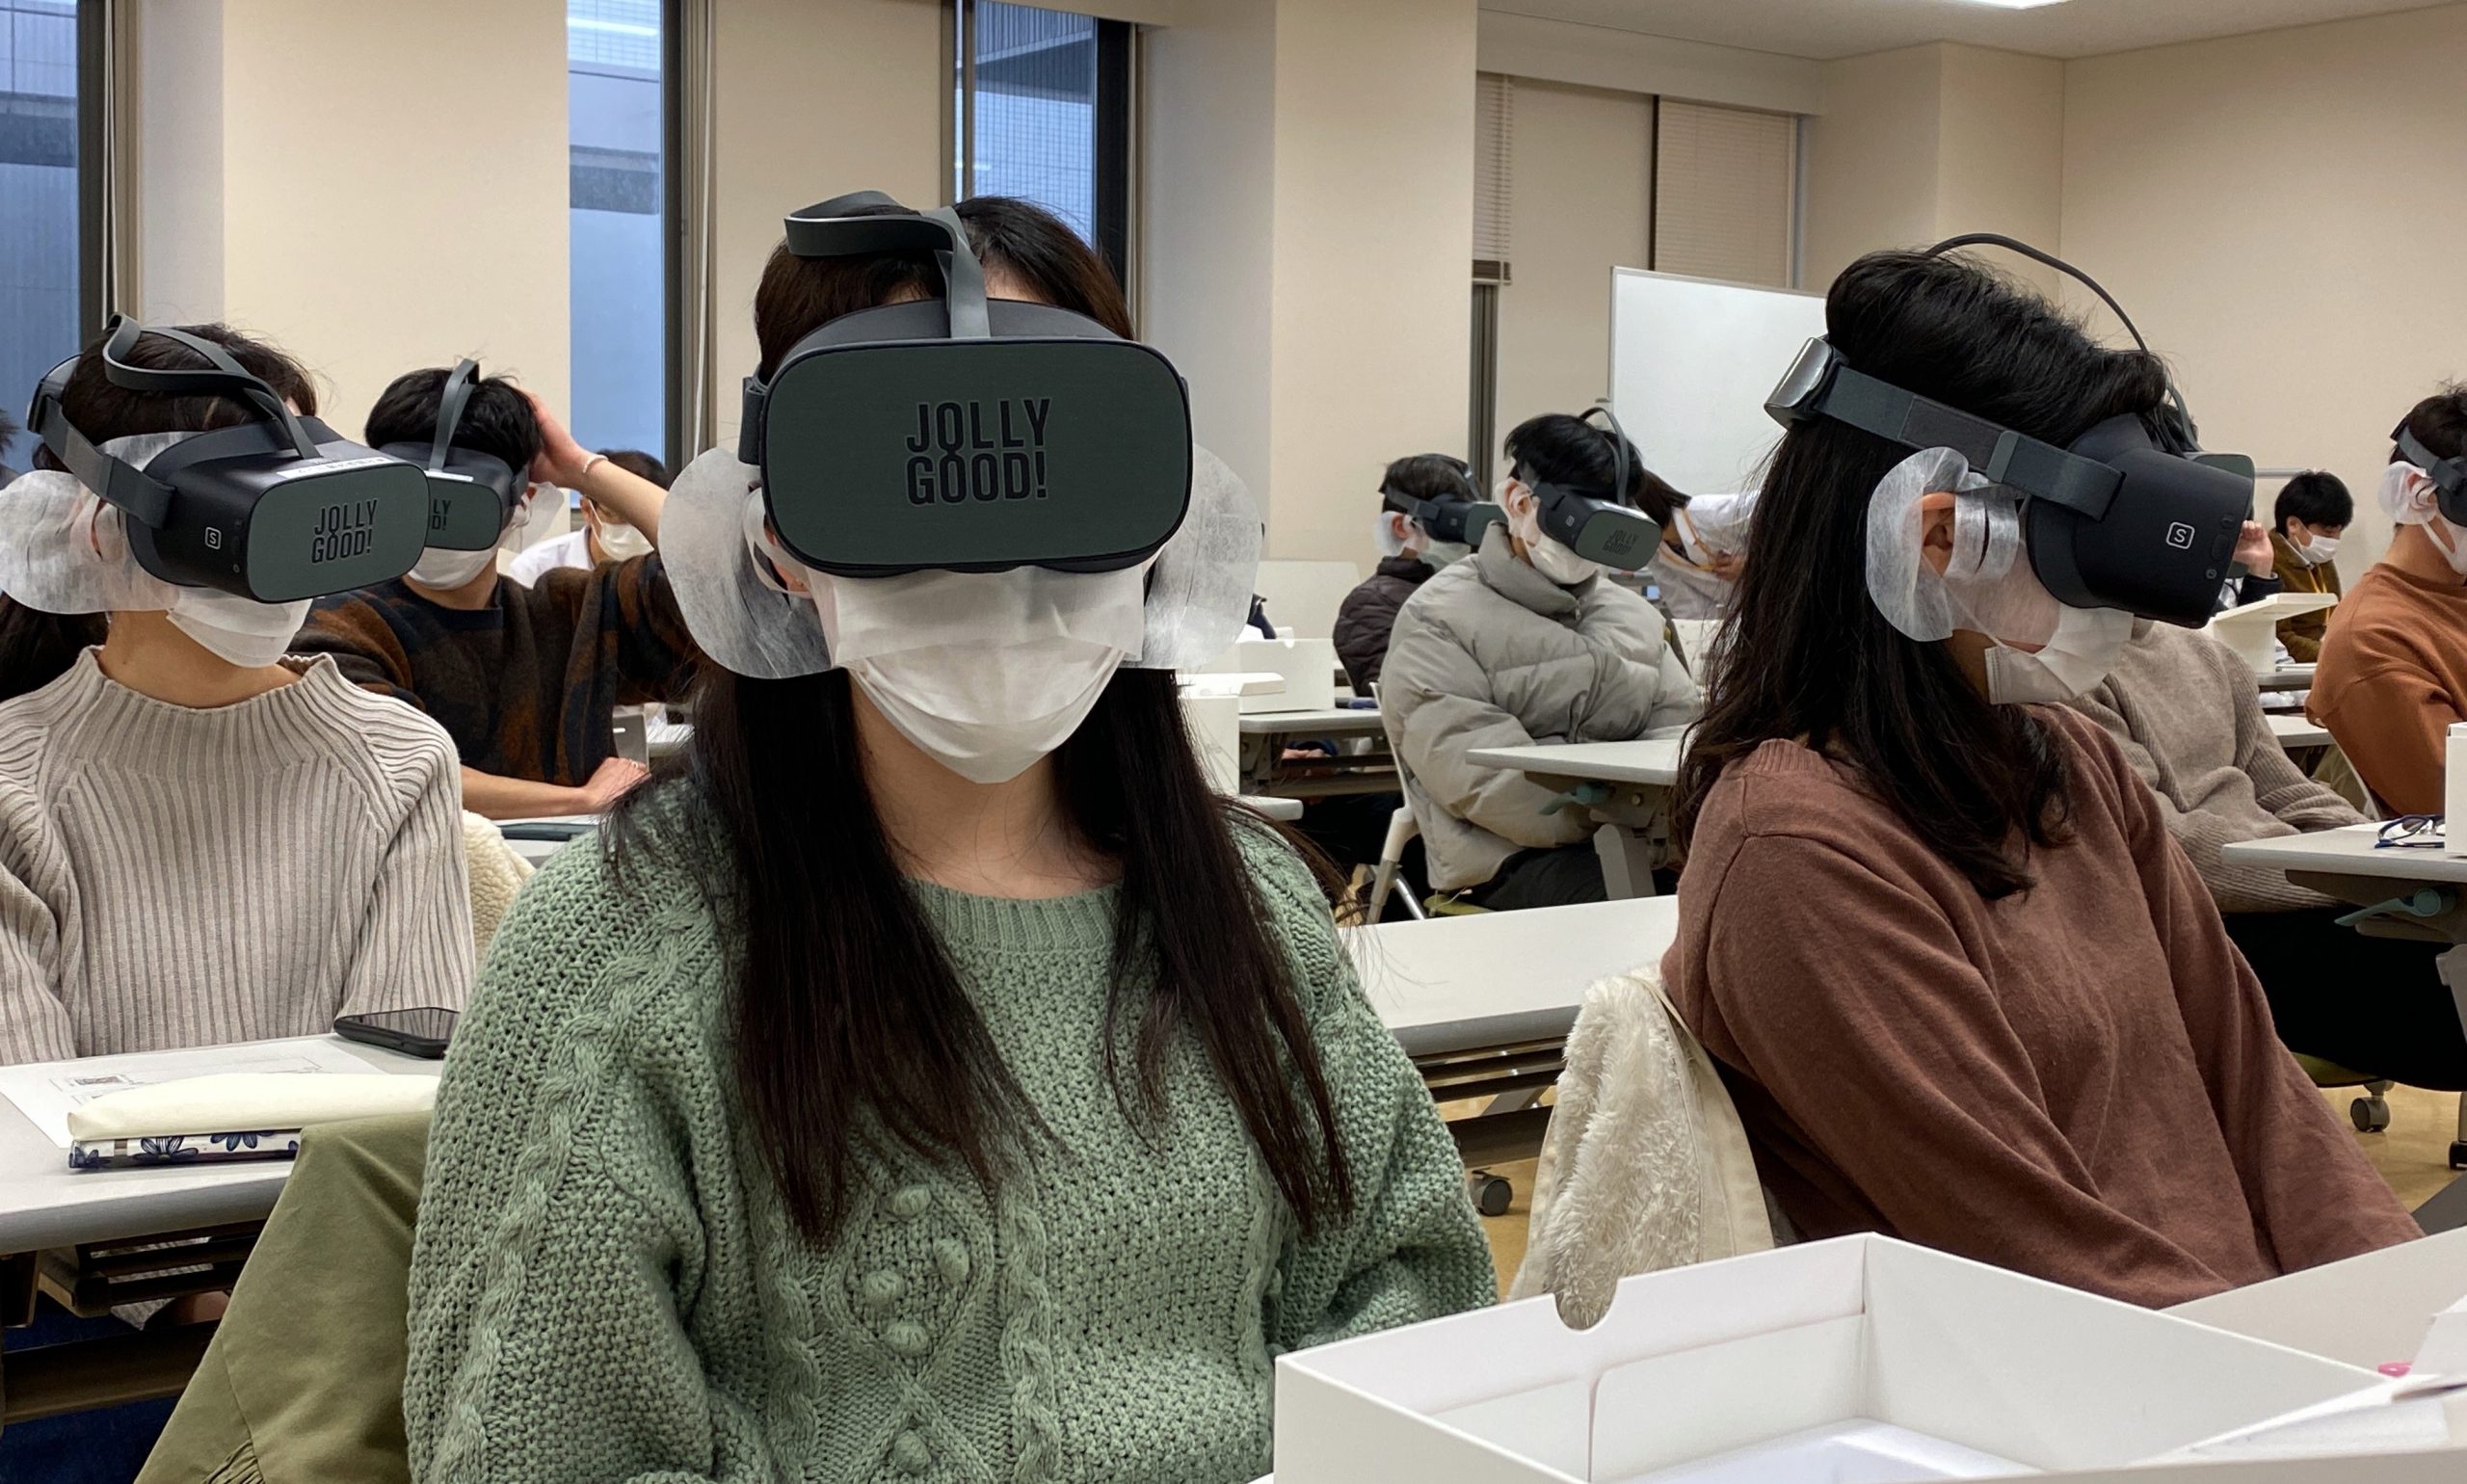 NHKにて、ジョリーグッドと愛媛大学が共同開発した感染症診療教育VRが紹介されました